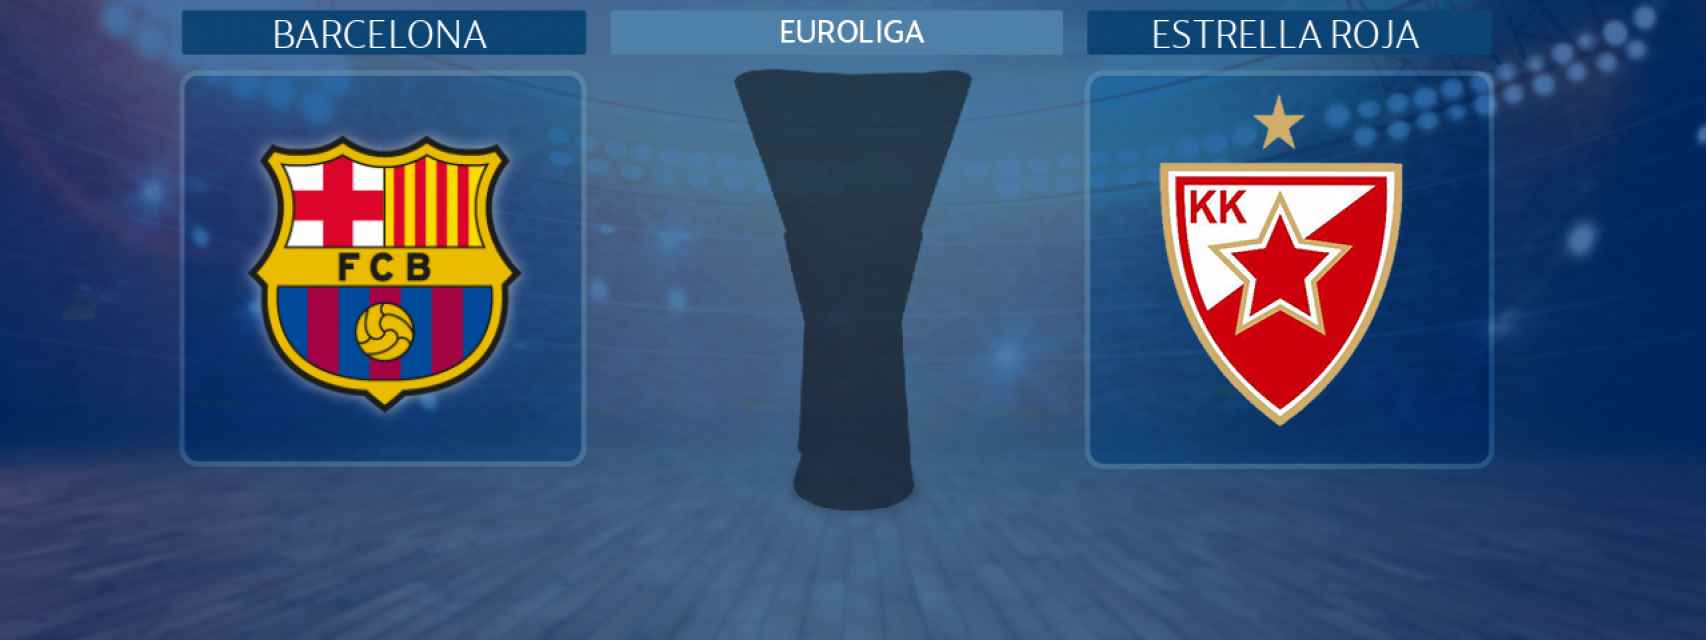 Barcelona - Estrella Roja, partido de la Euroliga